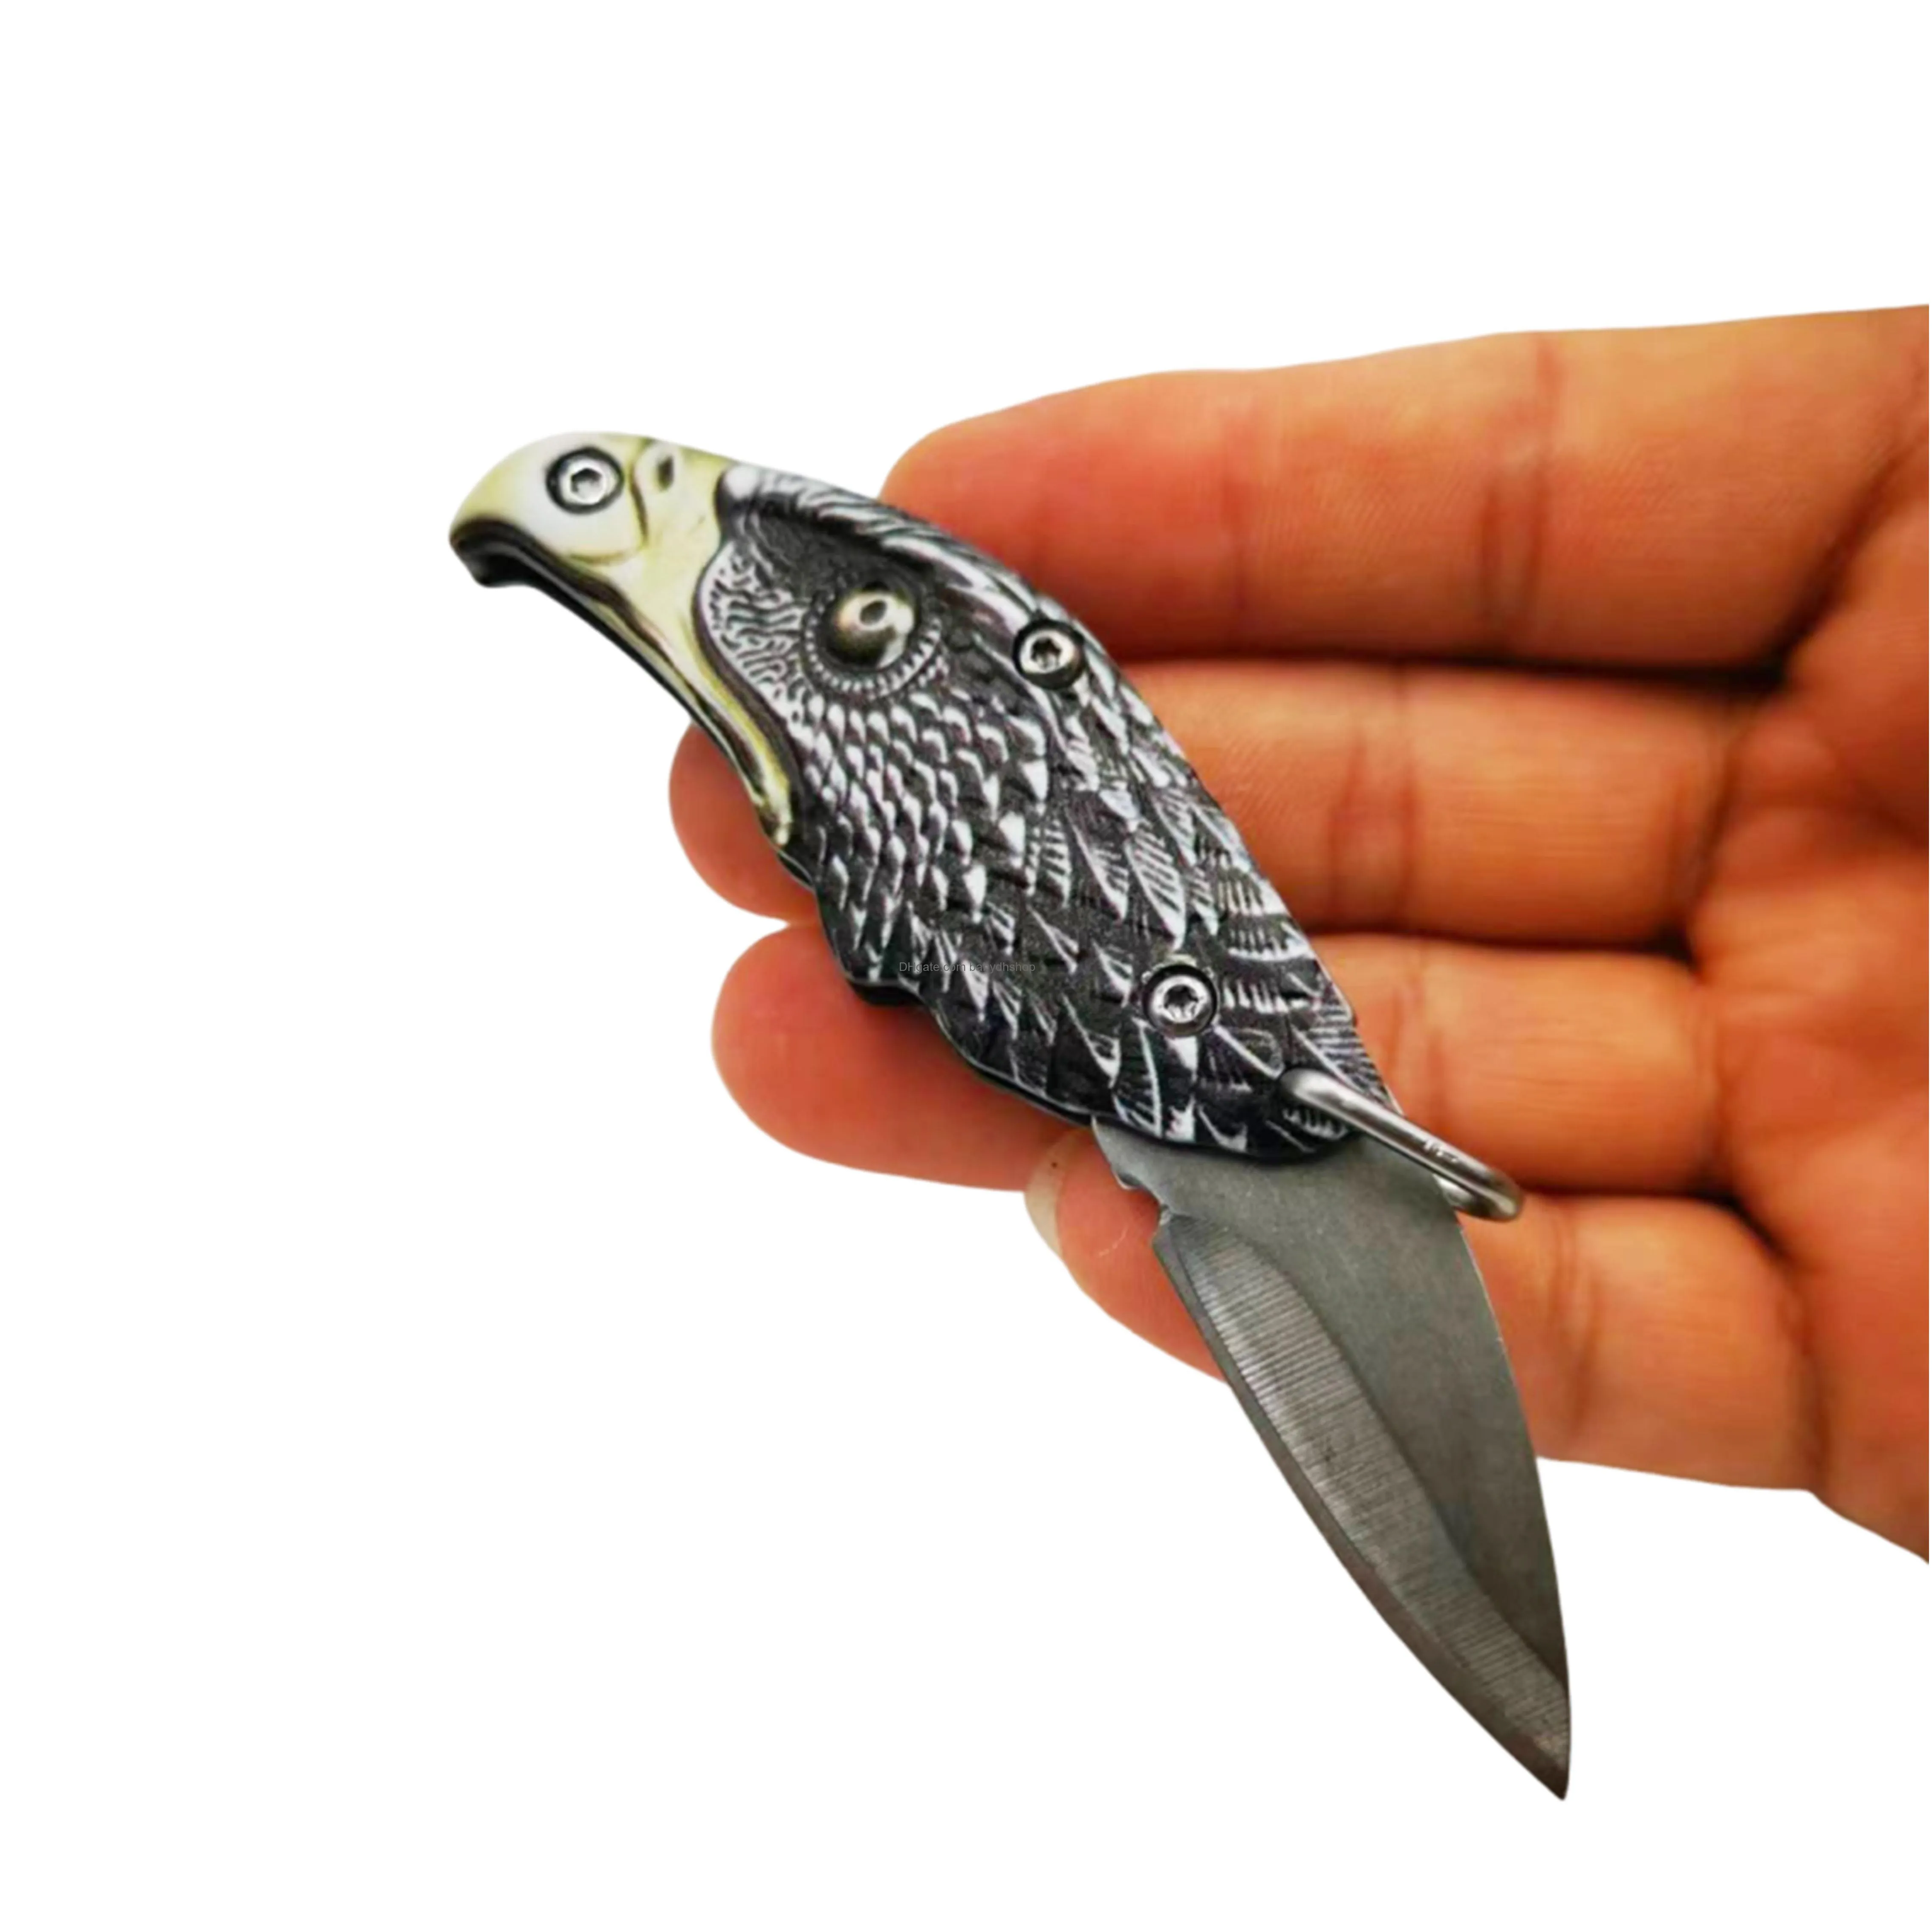 miniature keychain knife  head shaped pocket knife